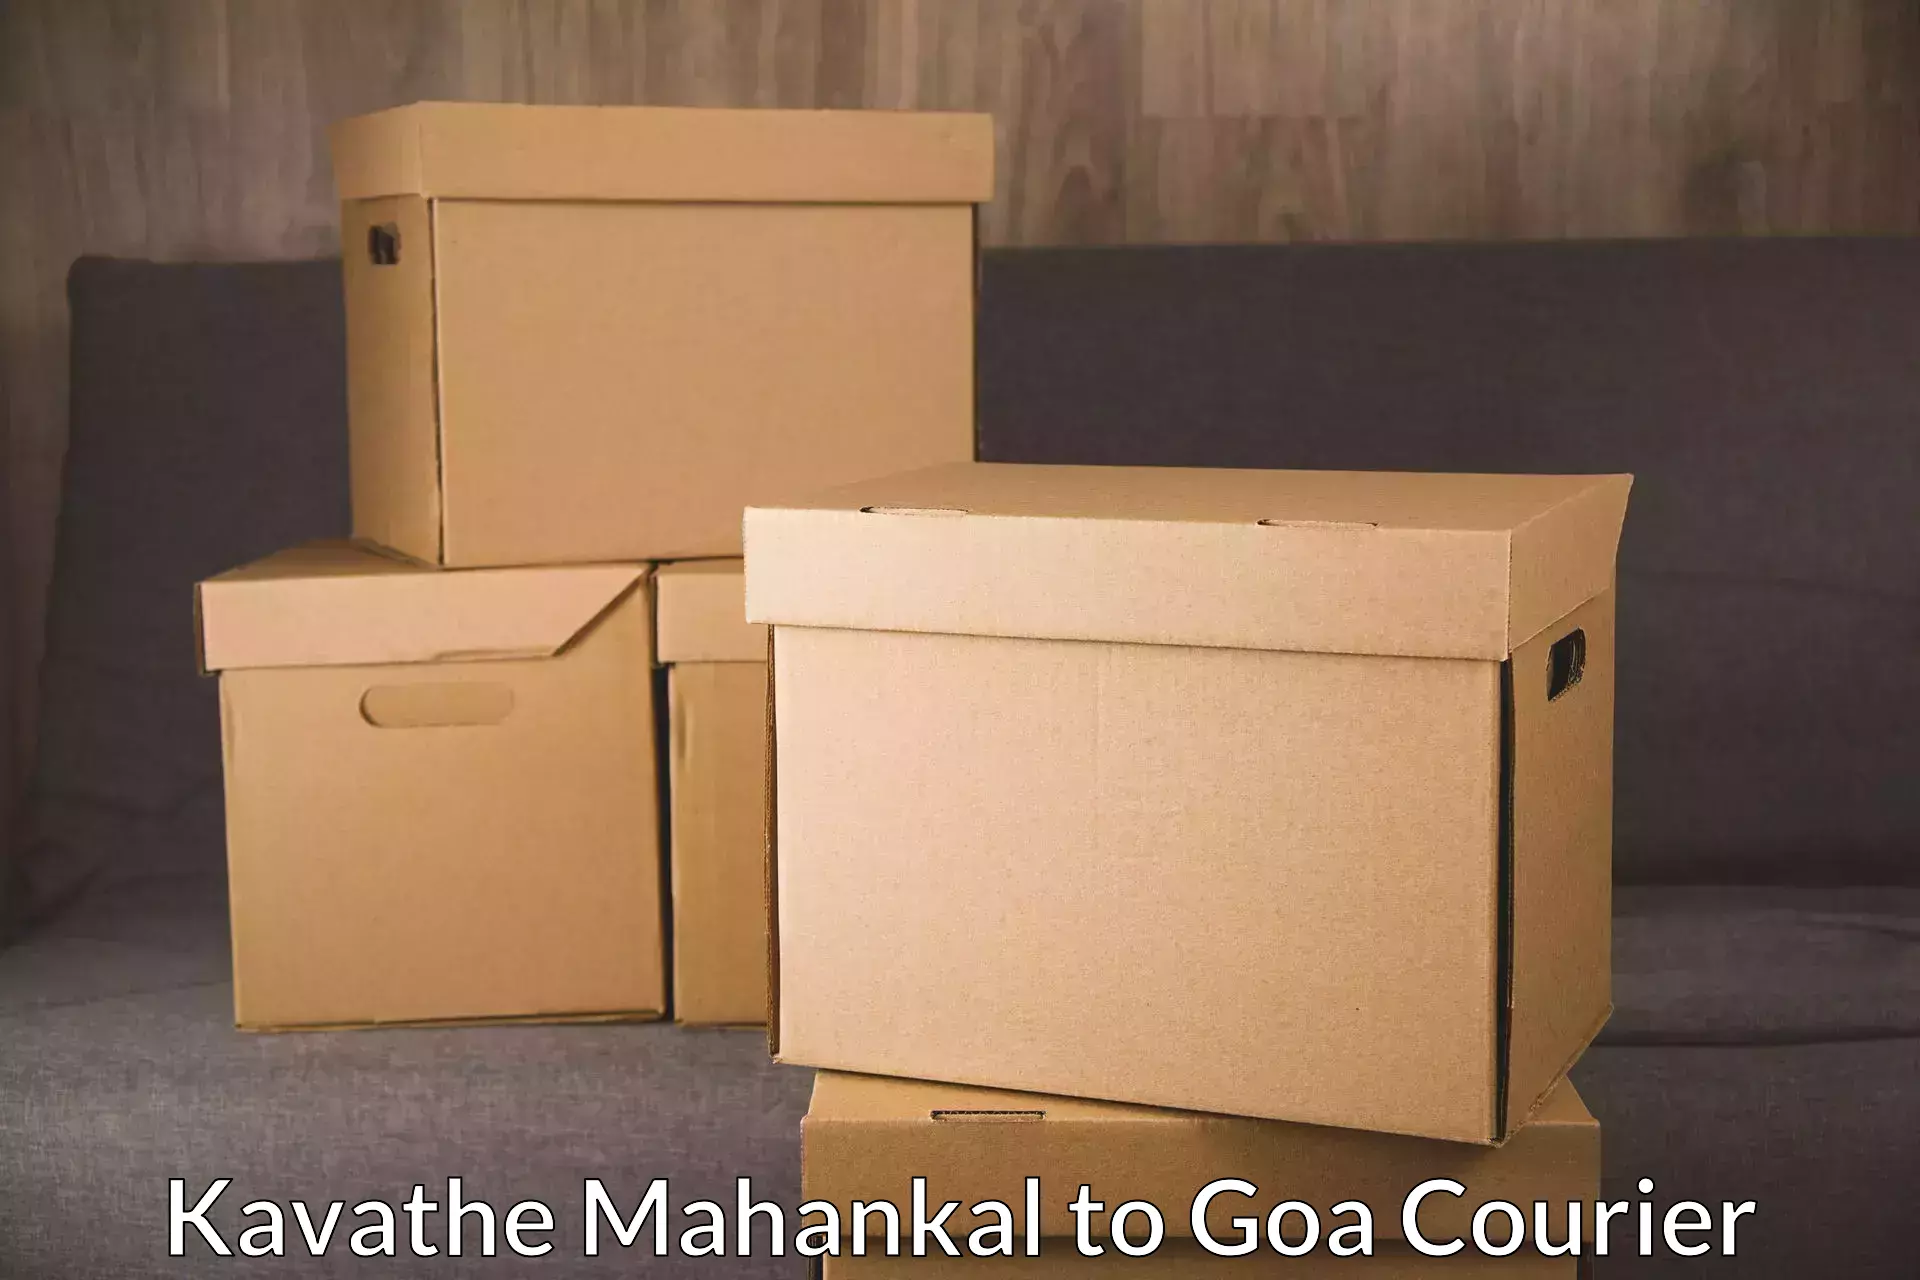 Courier insurance Kavathe Mahankal to Vasco da Gama